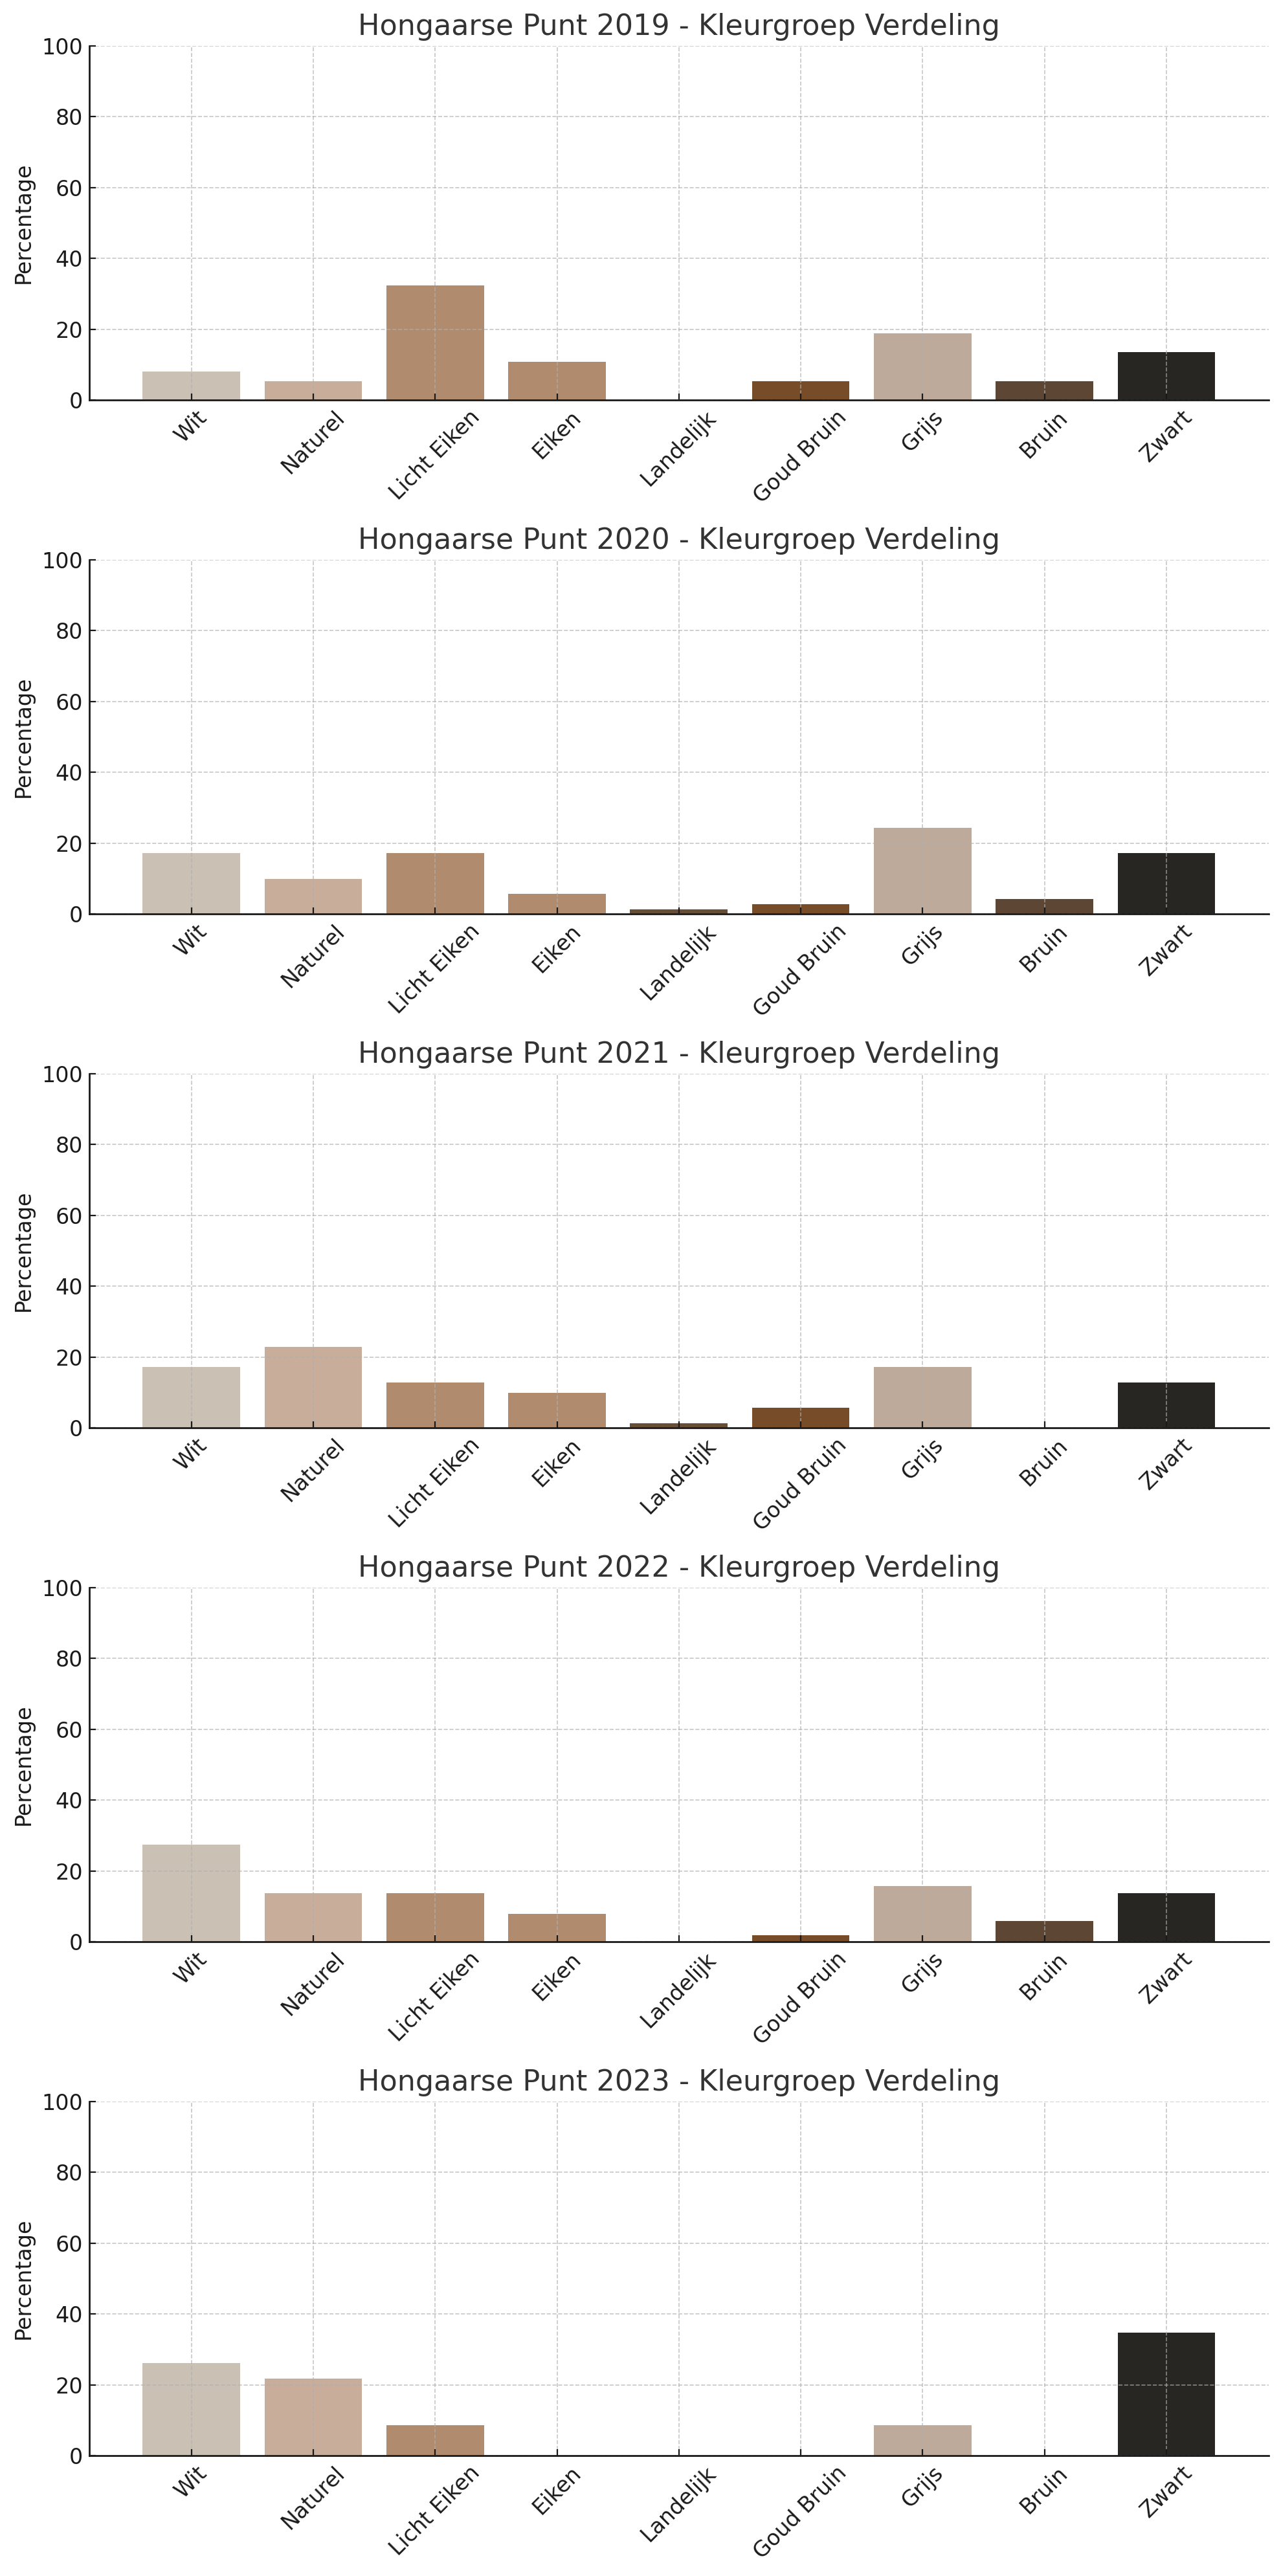 De gekozen kleurengroepen in het Hongaarse punt patroon per jaar